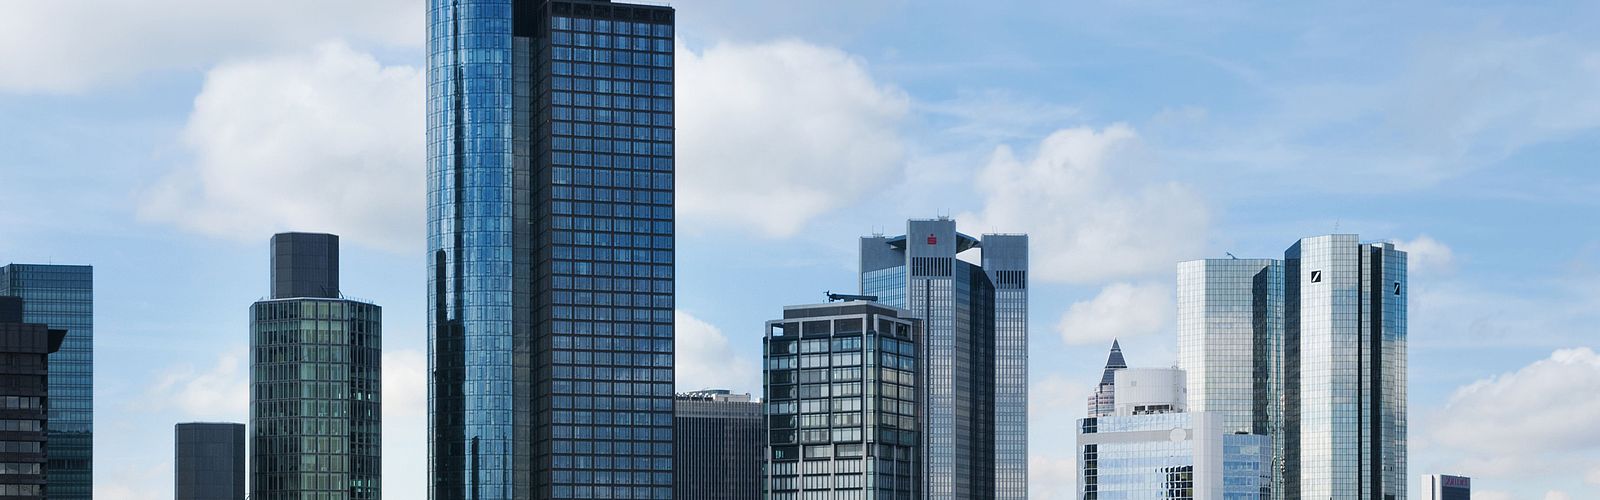 Frankfurt Skyline des Finanzviertels